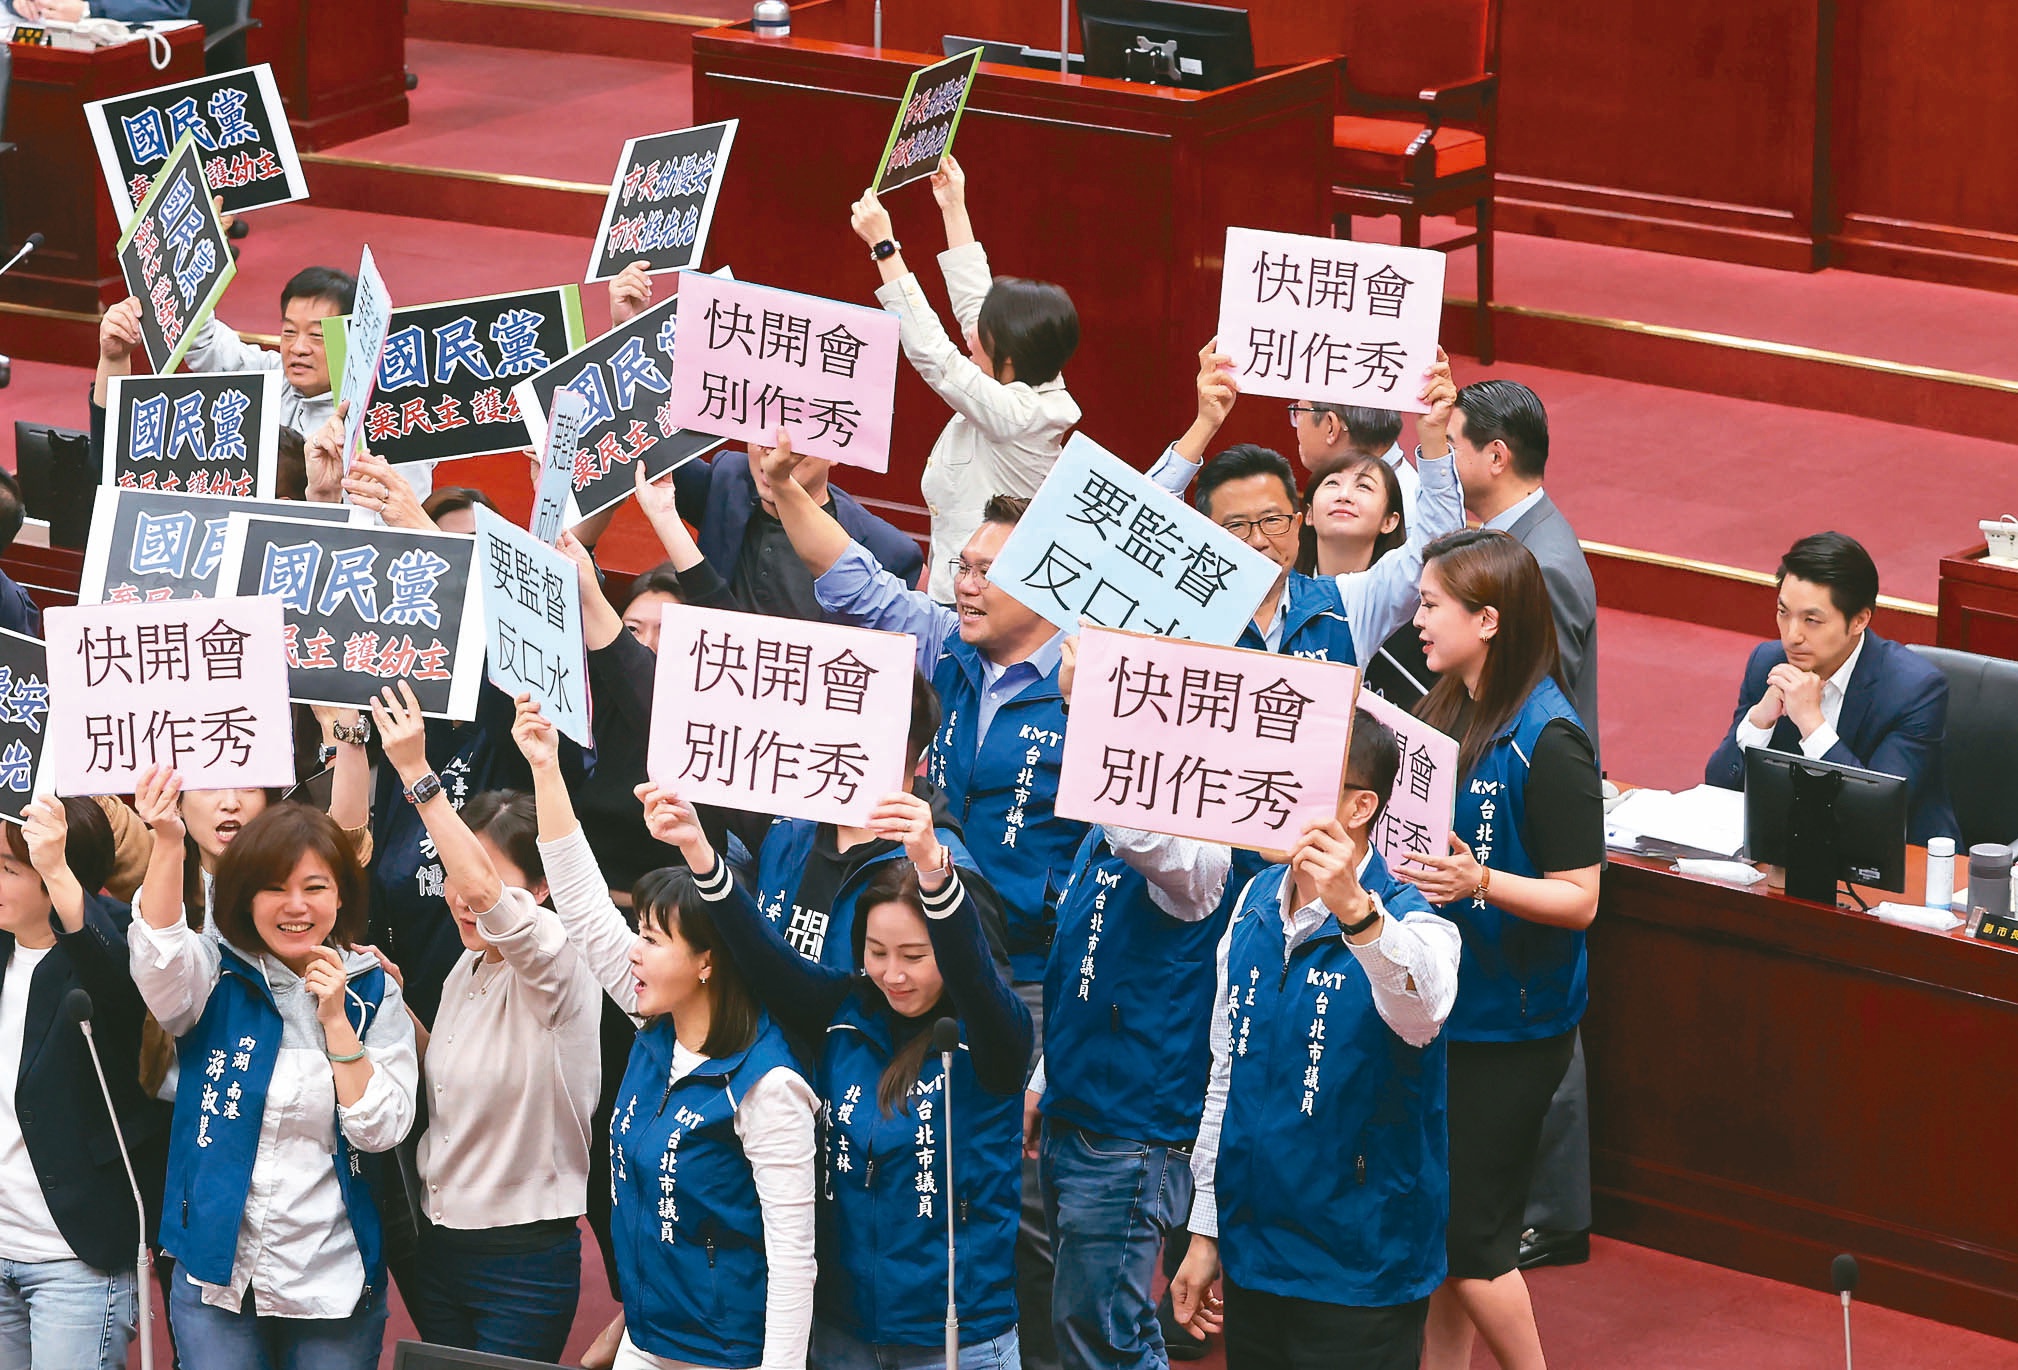 台北市长蒋万安（右）昨赴议会施政报告，民进党议员拿出字牌高喊「国民党弃民主、顾幼主」；国民党议员反击举「快开会、别作秀」，双方吵成一团，坐在备询席的蒋万安面无表情。记者胡经周／摄影